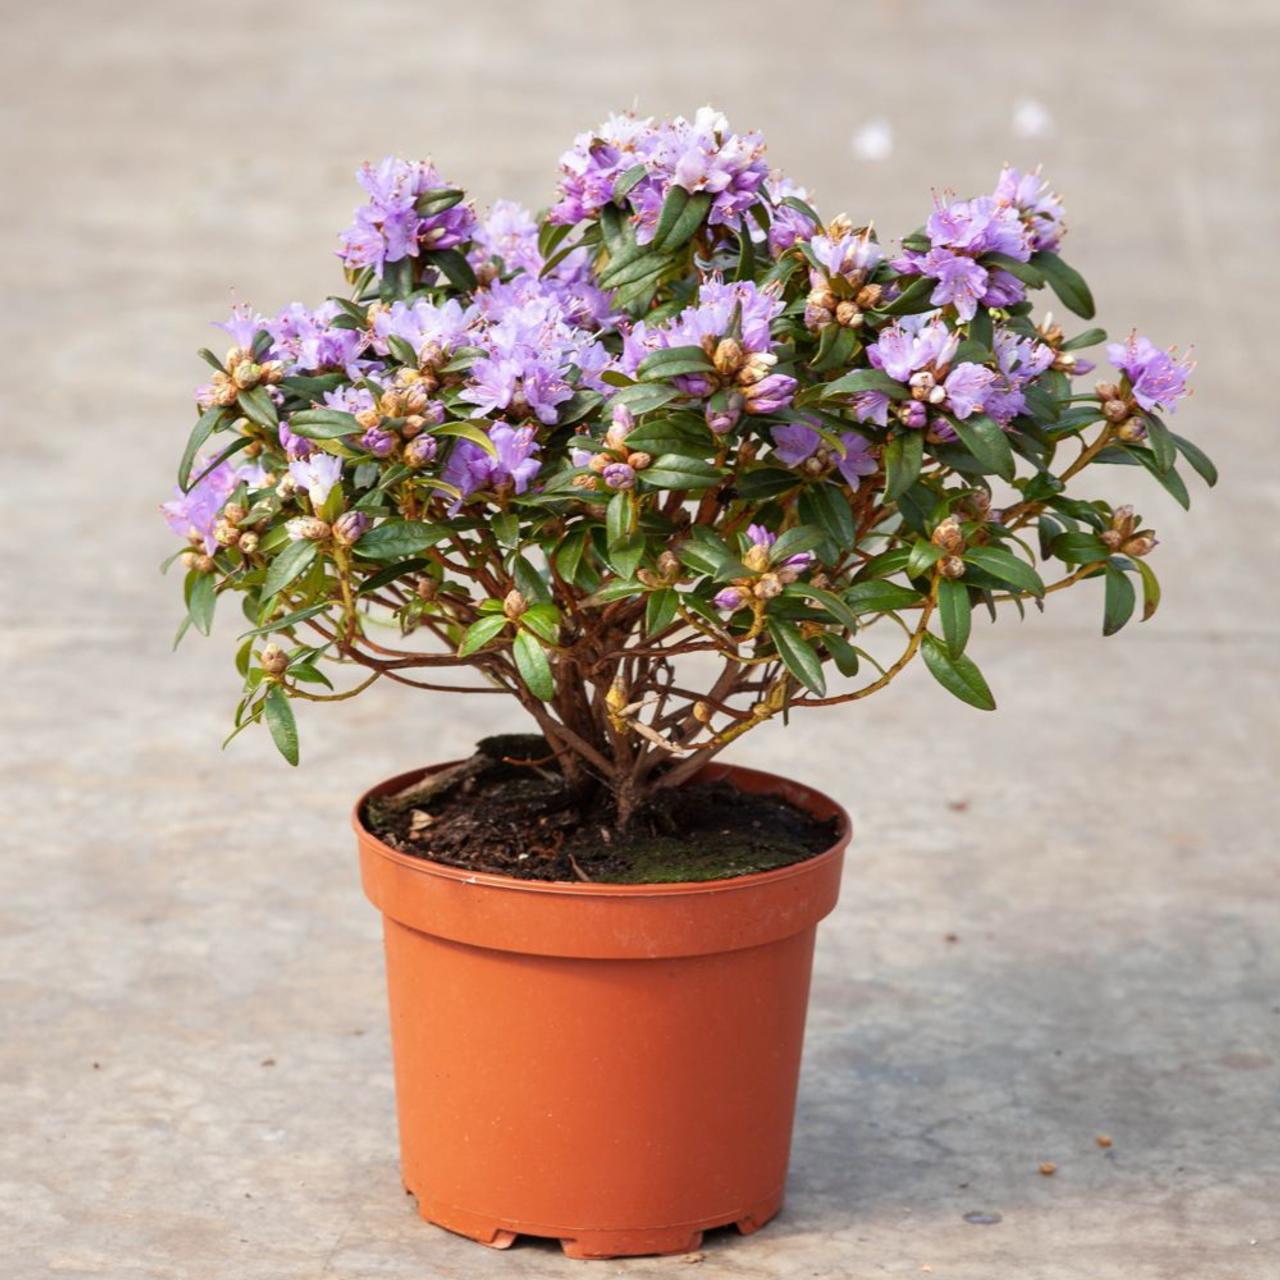 rhododendron 'gristede'  kaufen sie pflanzen bei coolplants